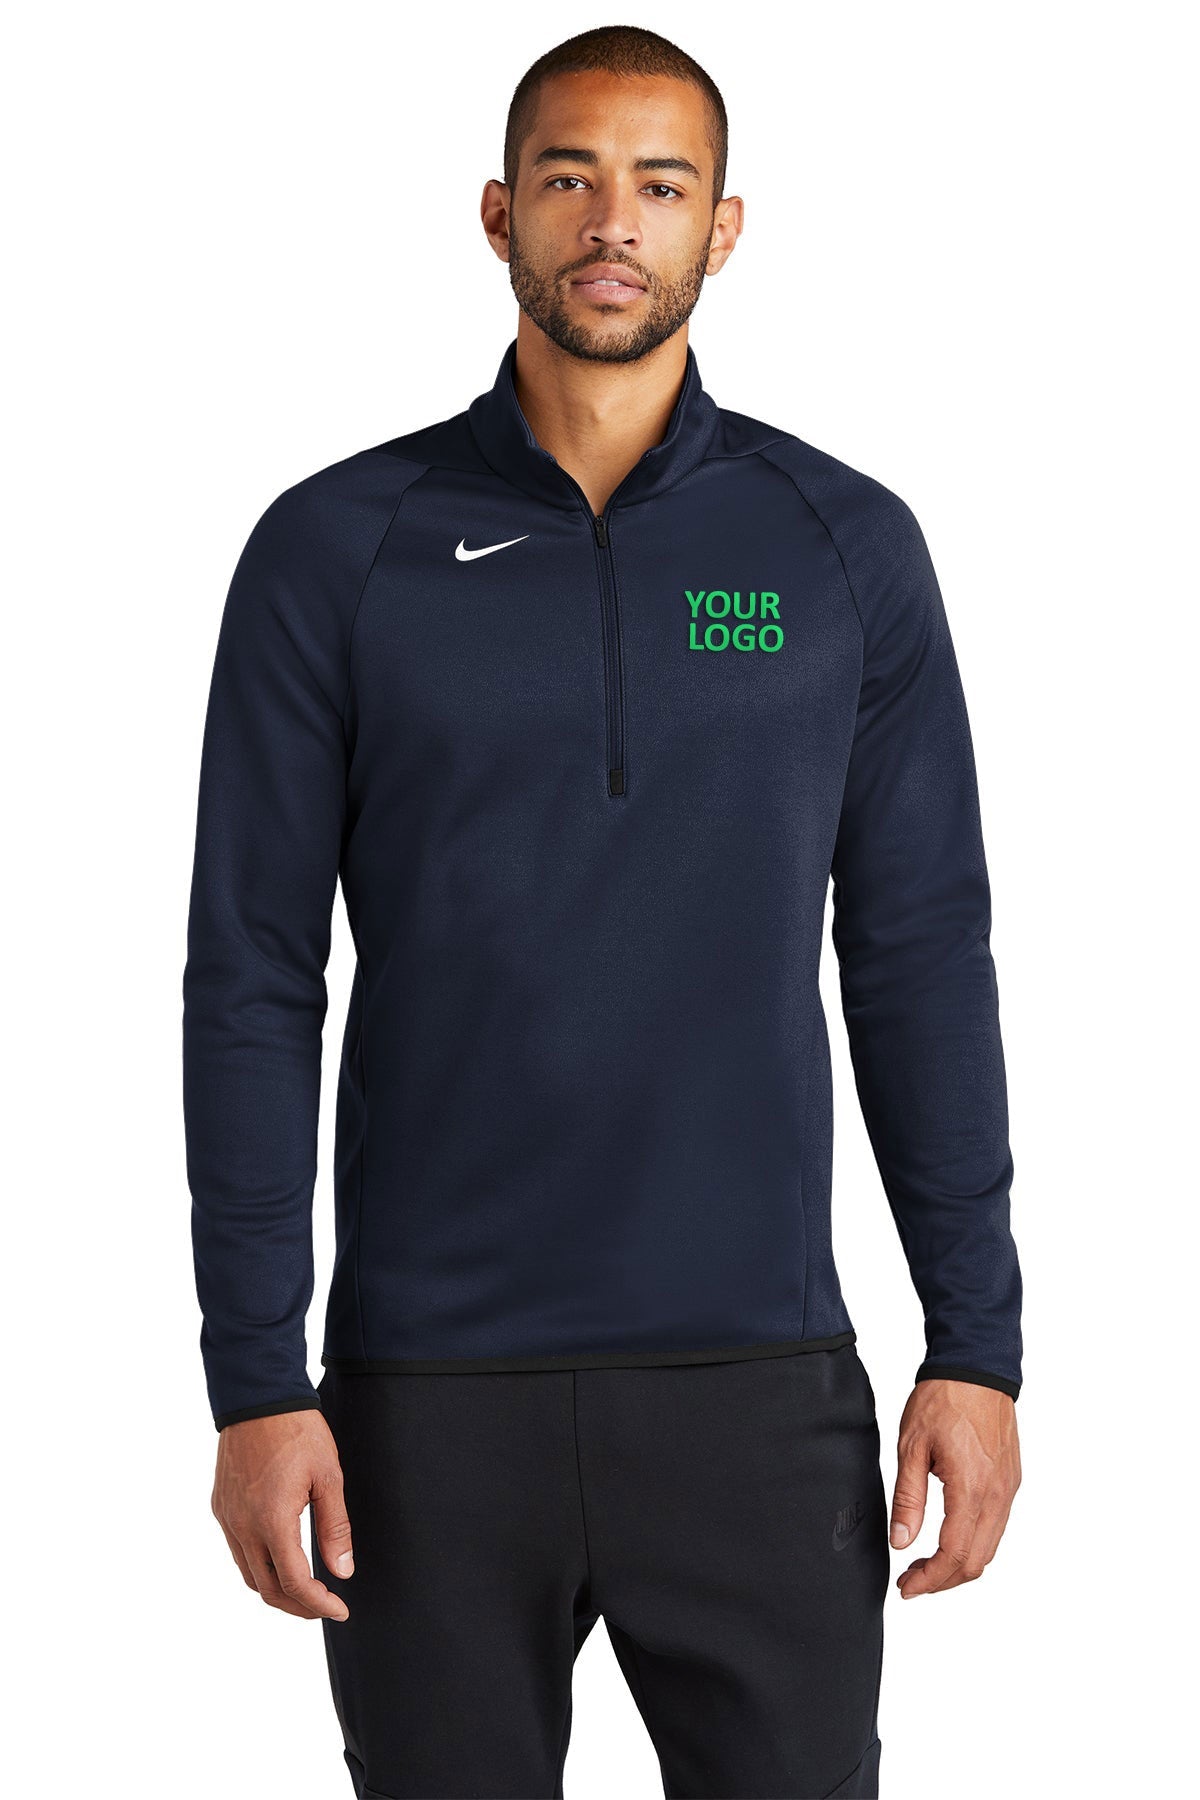 Nike Team Navy CN9492 jackets with company logo